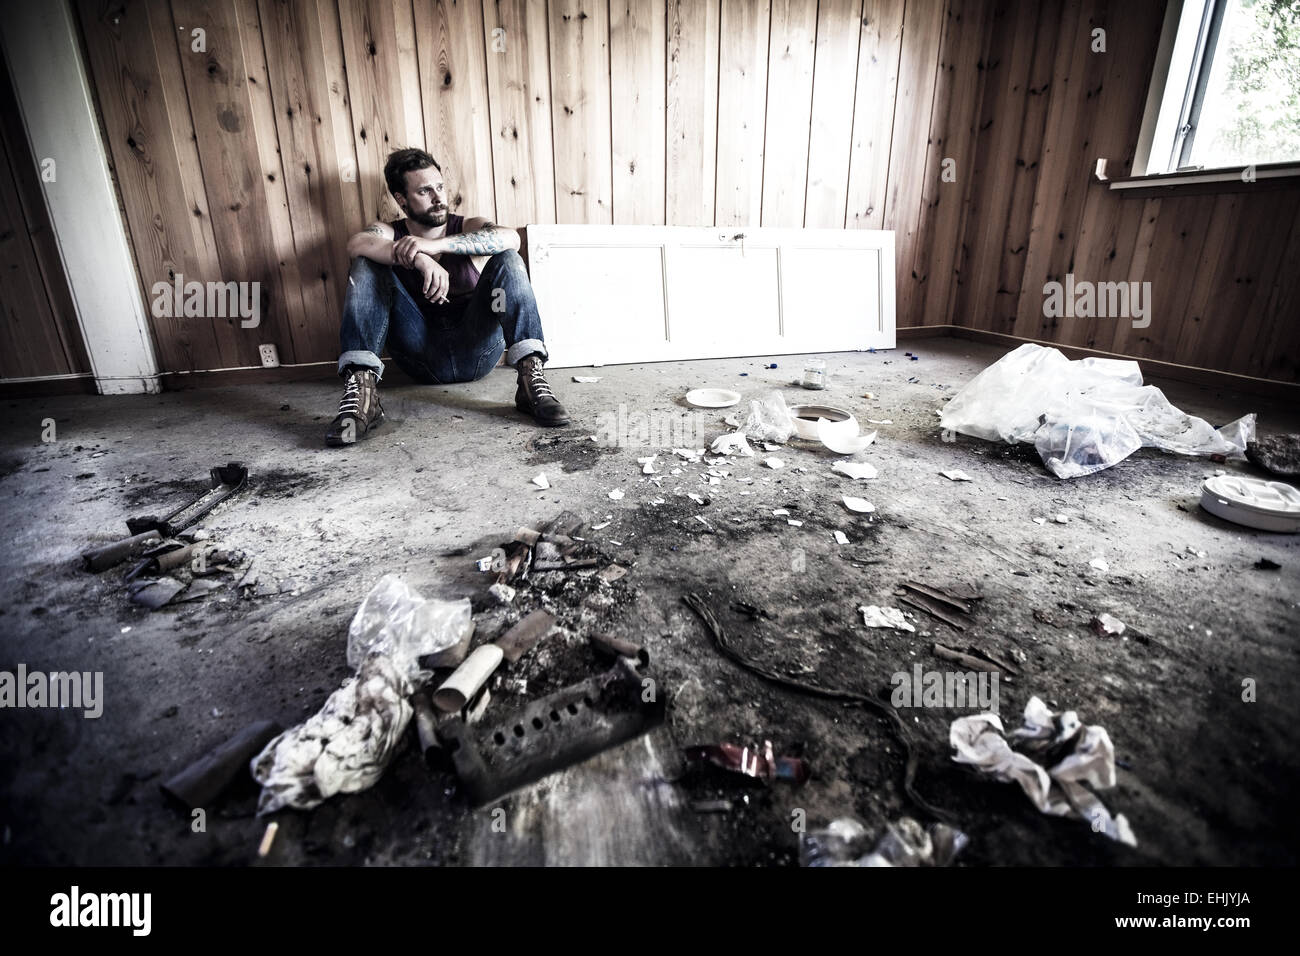 Mann oder Redneck sitzt auf dem Boden und Rauch in einem unordentlichen Haus. Stockfoto